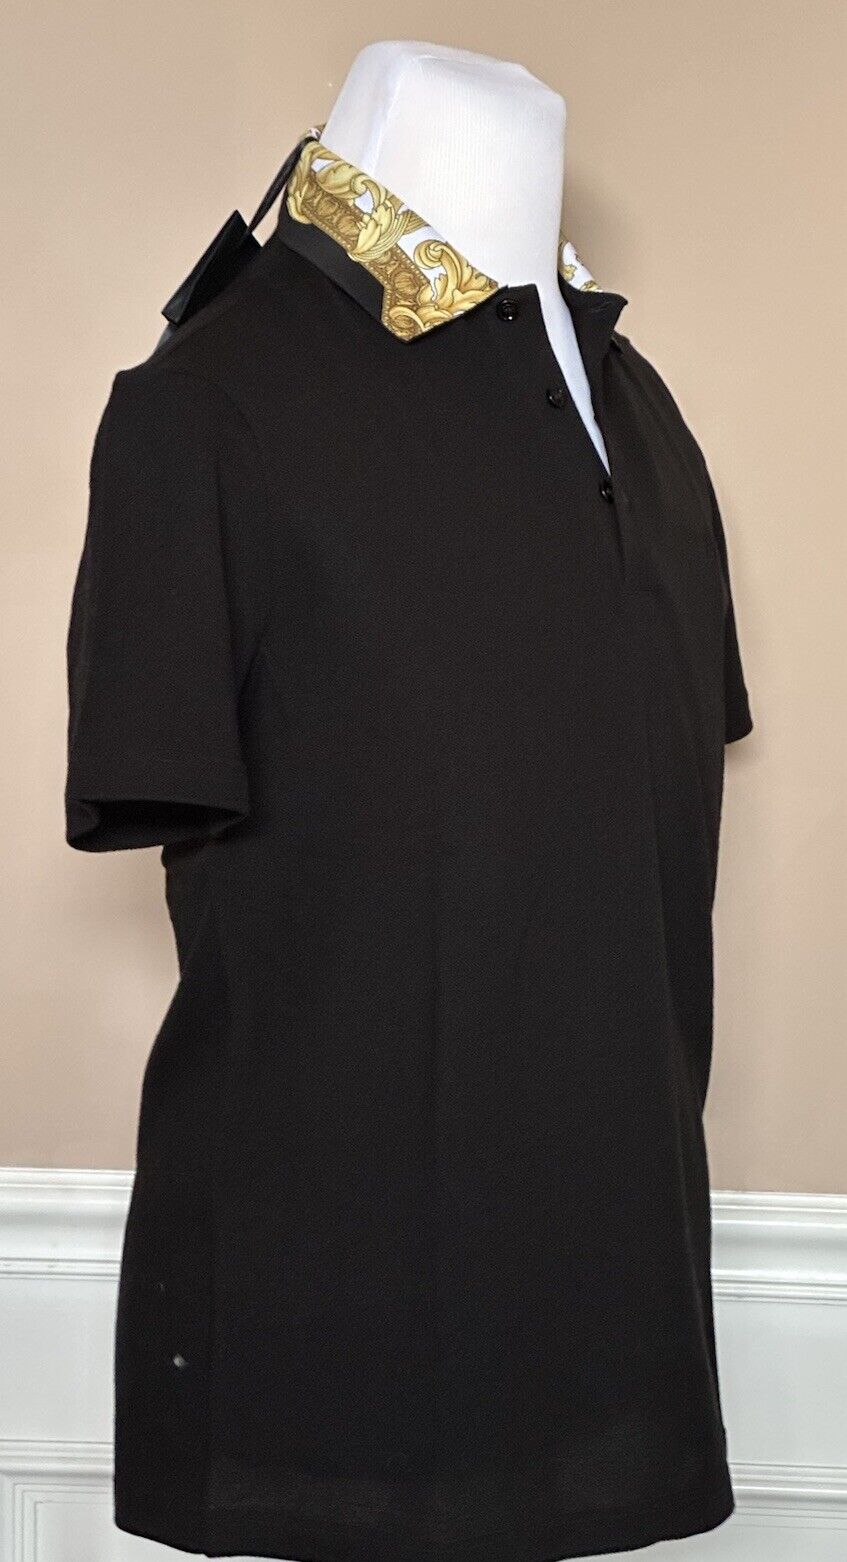 NWT $500 Versace Black Piquet Cotton Polo Shirt Small 1A08837